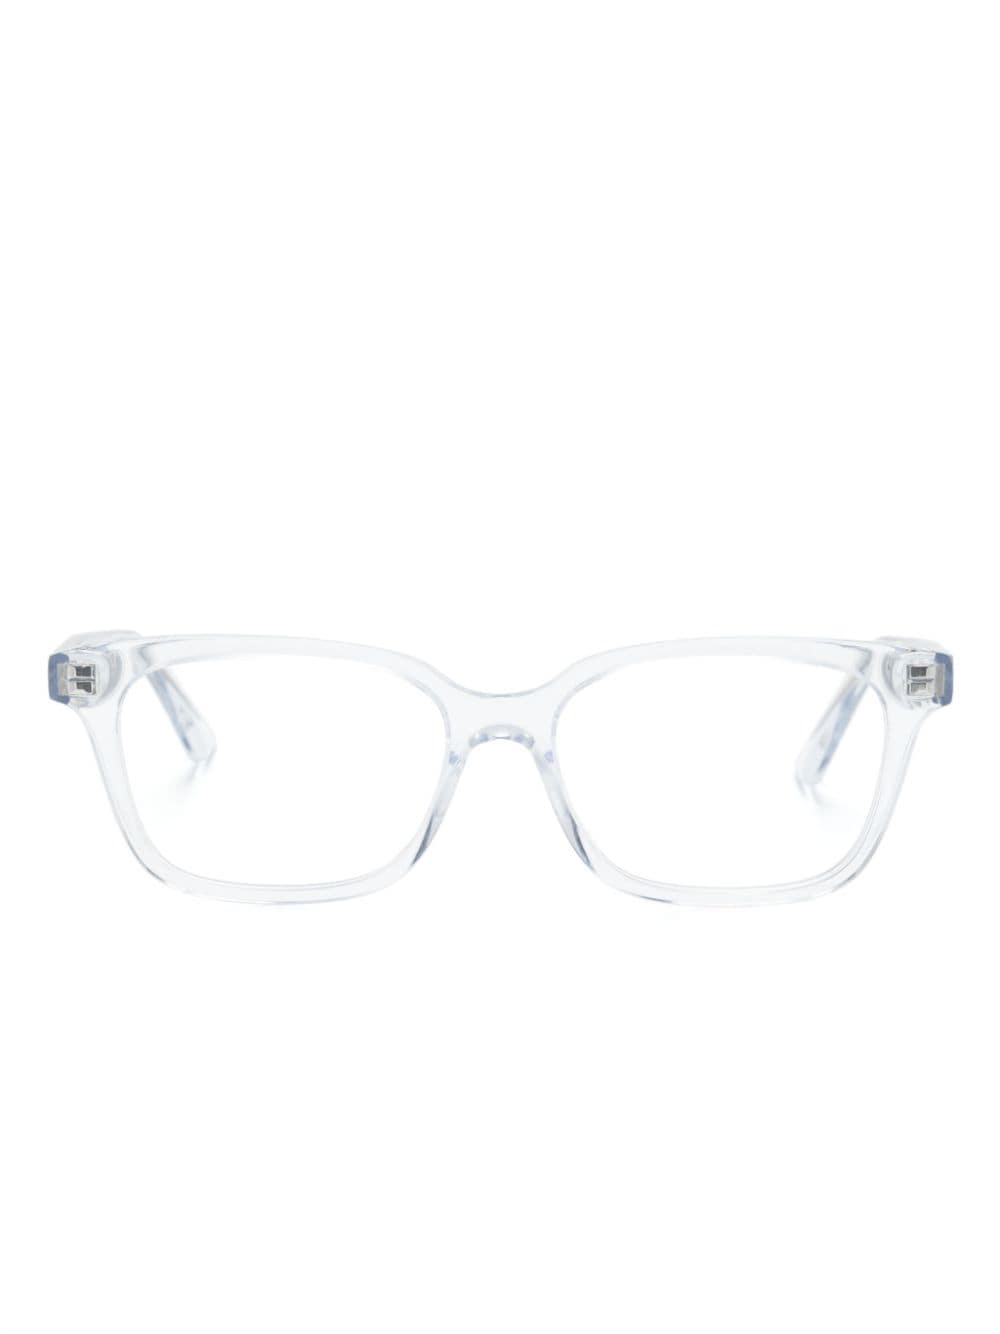 Alexander McQueen Eyewear Brille mit eckigem Gestell - Weiß von Alexander McQueen Eyewear